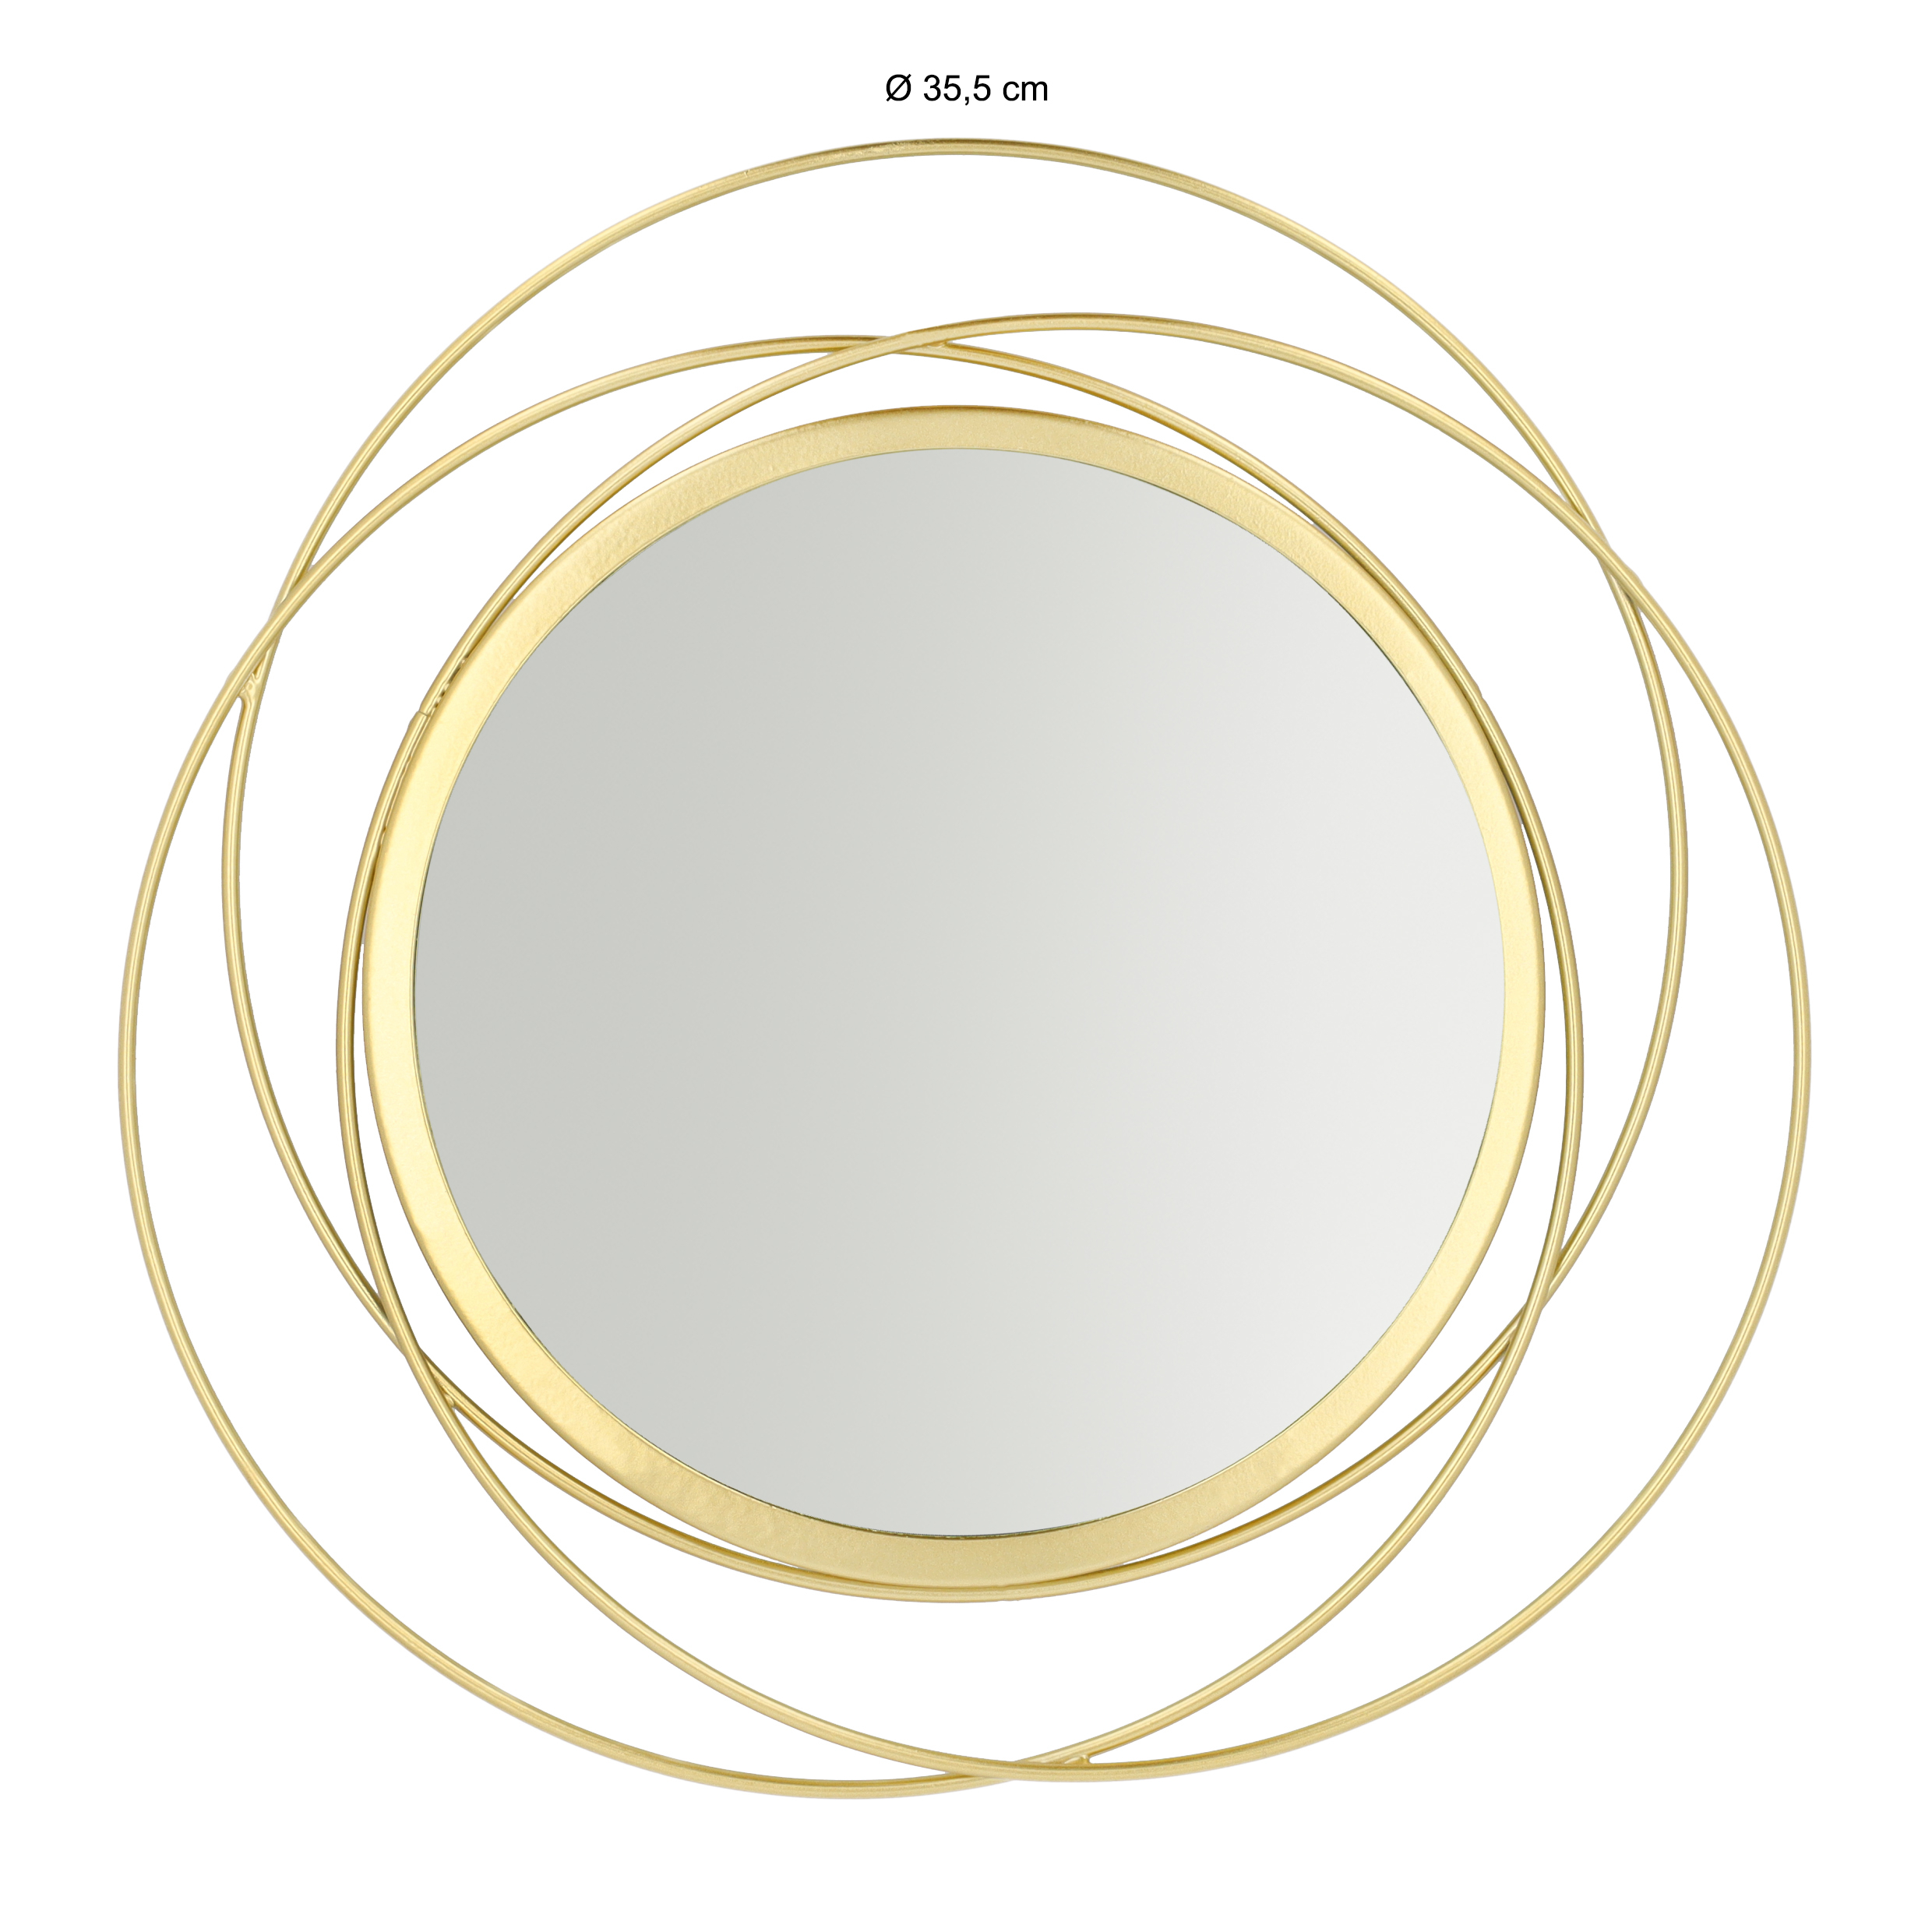 Roux verkopen Authenticatie Spiegel rond van goud van 35,5 cm | QUVIO | HomeLiving